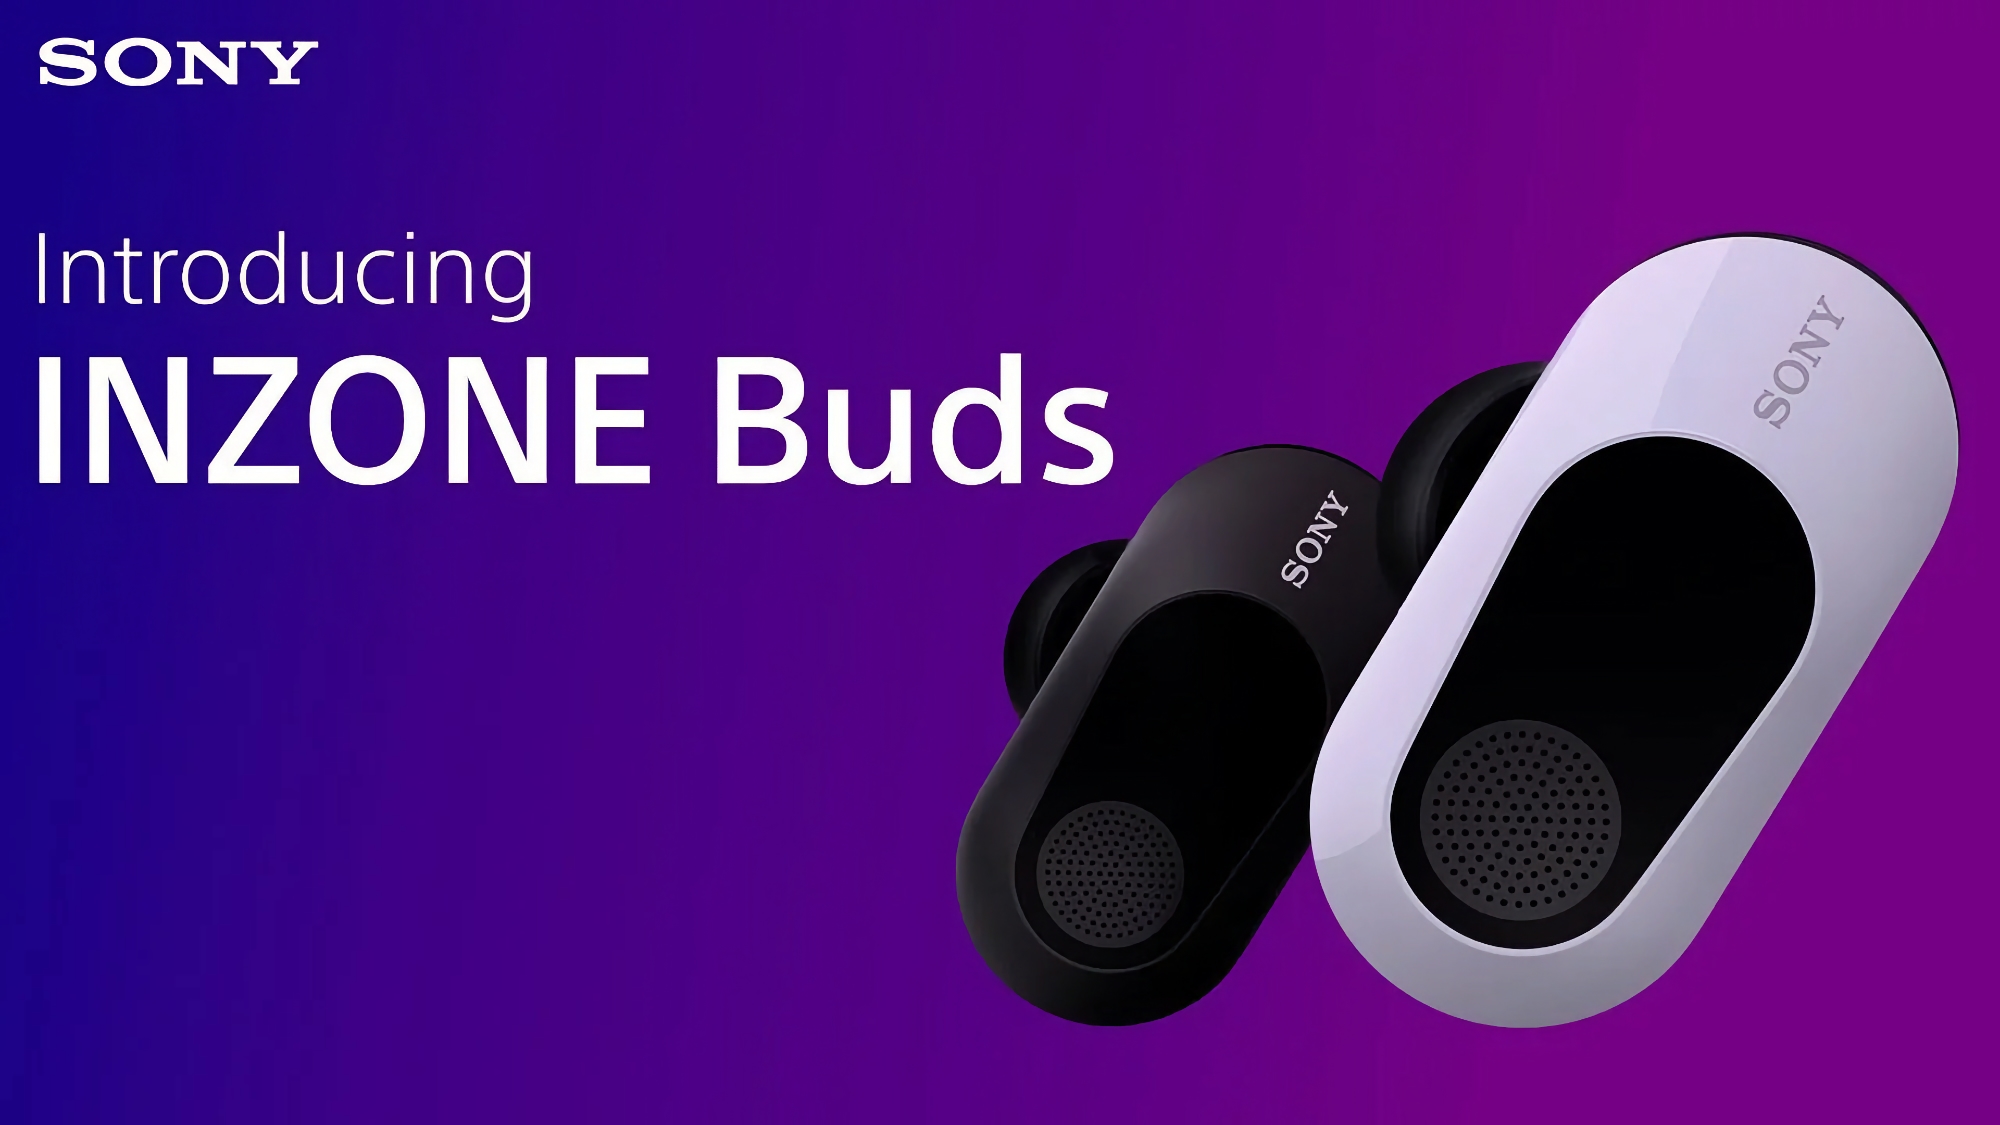 Sony Inzone Buds: Auriculares TWS para PlayStation 5 y PC con ANC, 360 Spatial audio y hasta 24 horas de autonomía por 199€.